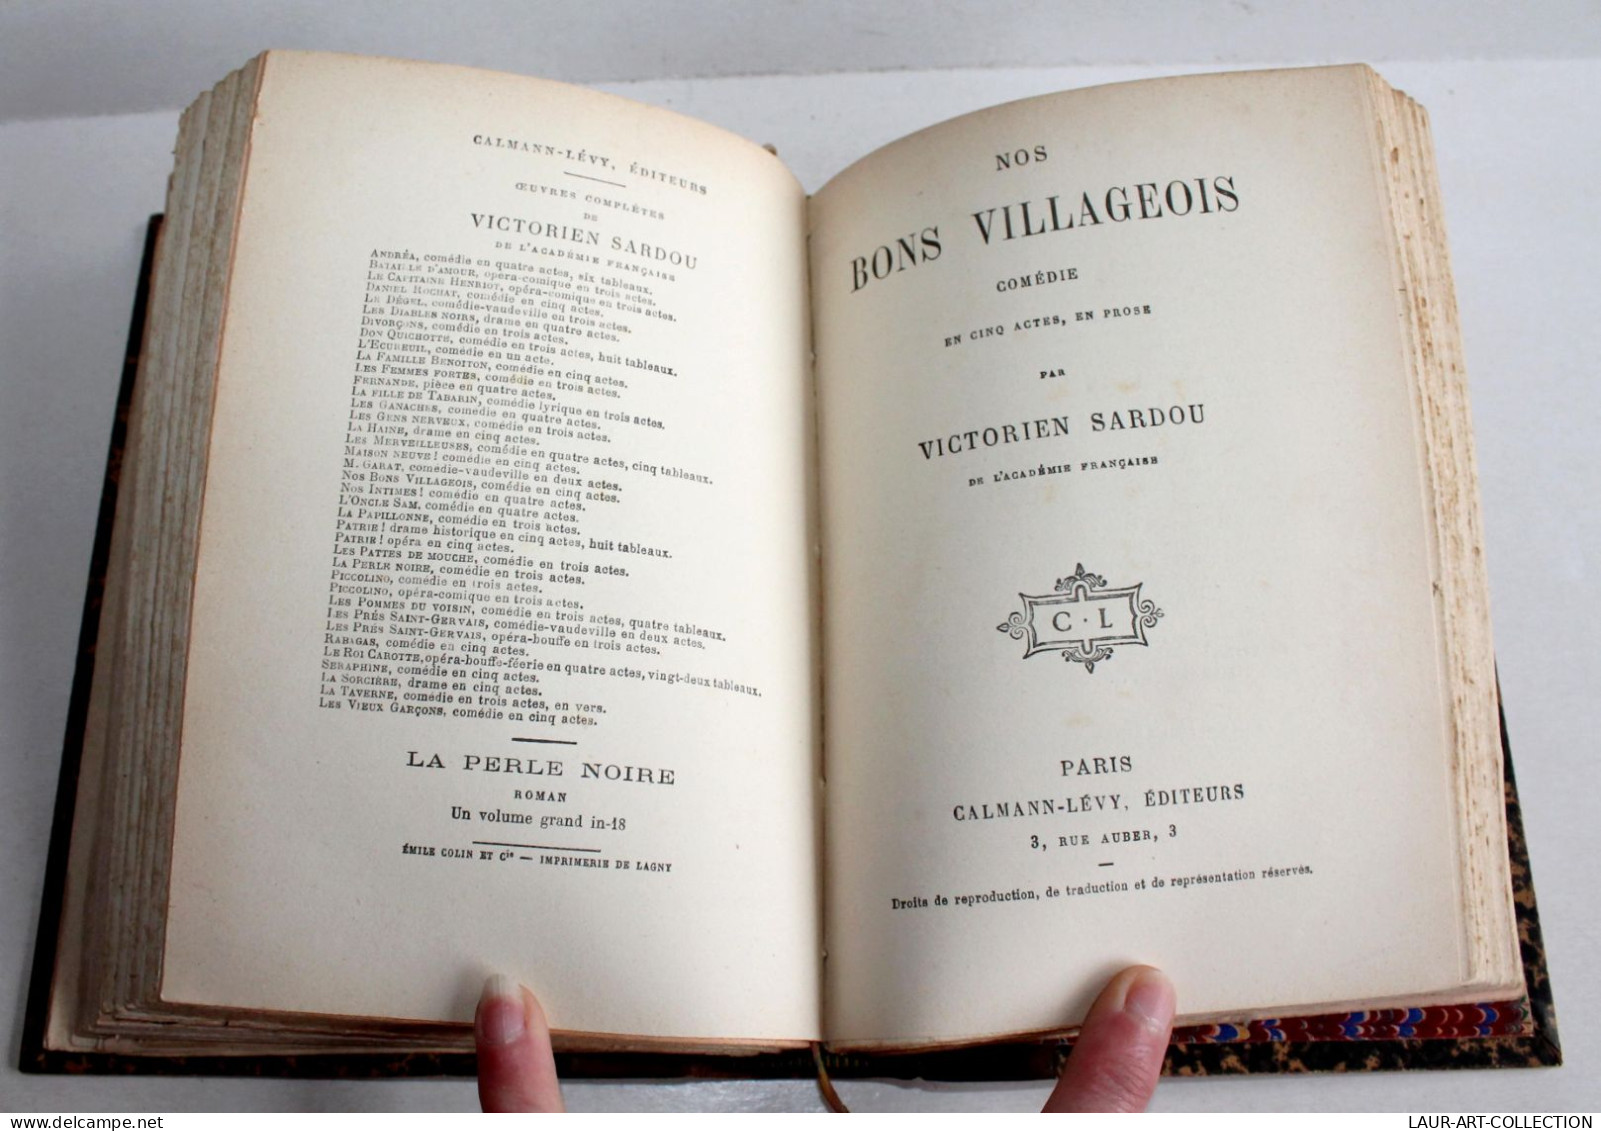 RARE! VICTORIEN SARDOU De CLARETIE + NOS BONS VILLAGEOIS COMEDIE 1883 THEATRE / ANCIEN LIVRE XIXe SIECLE (2603.42) - French Authors